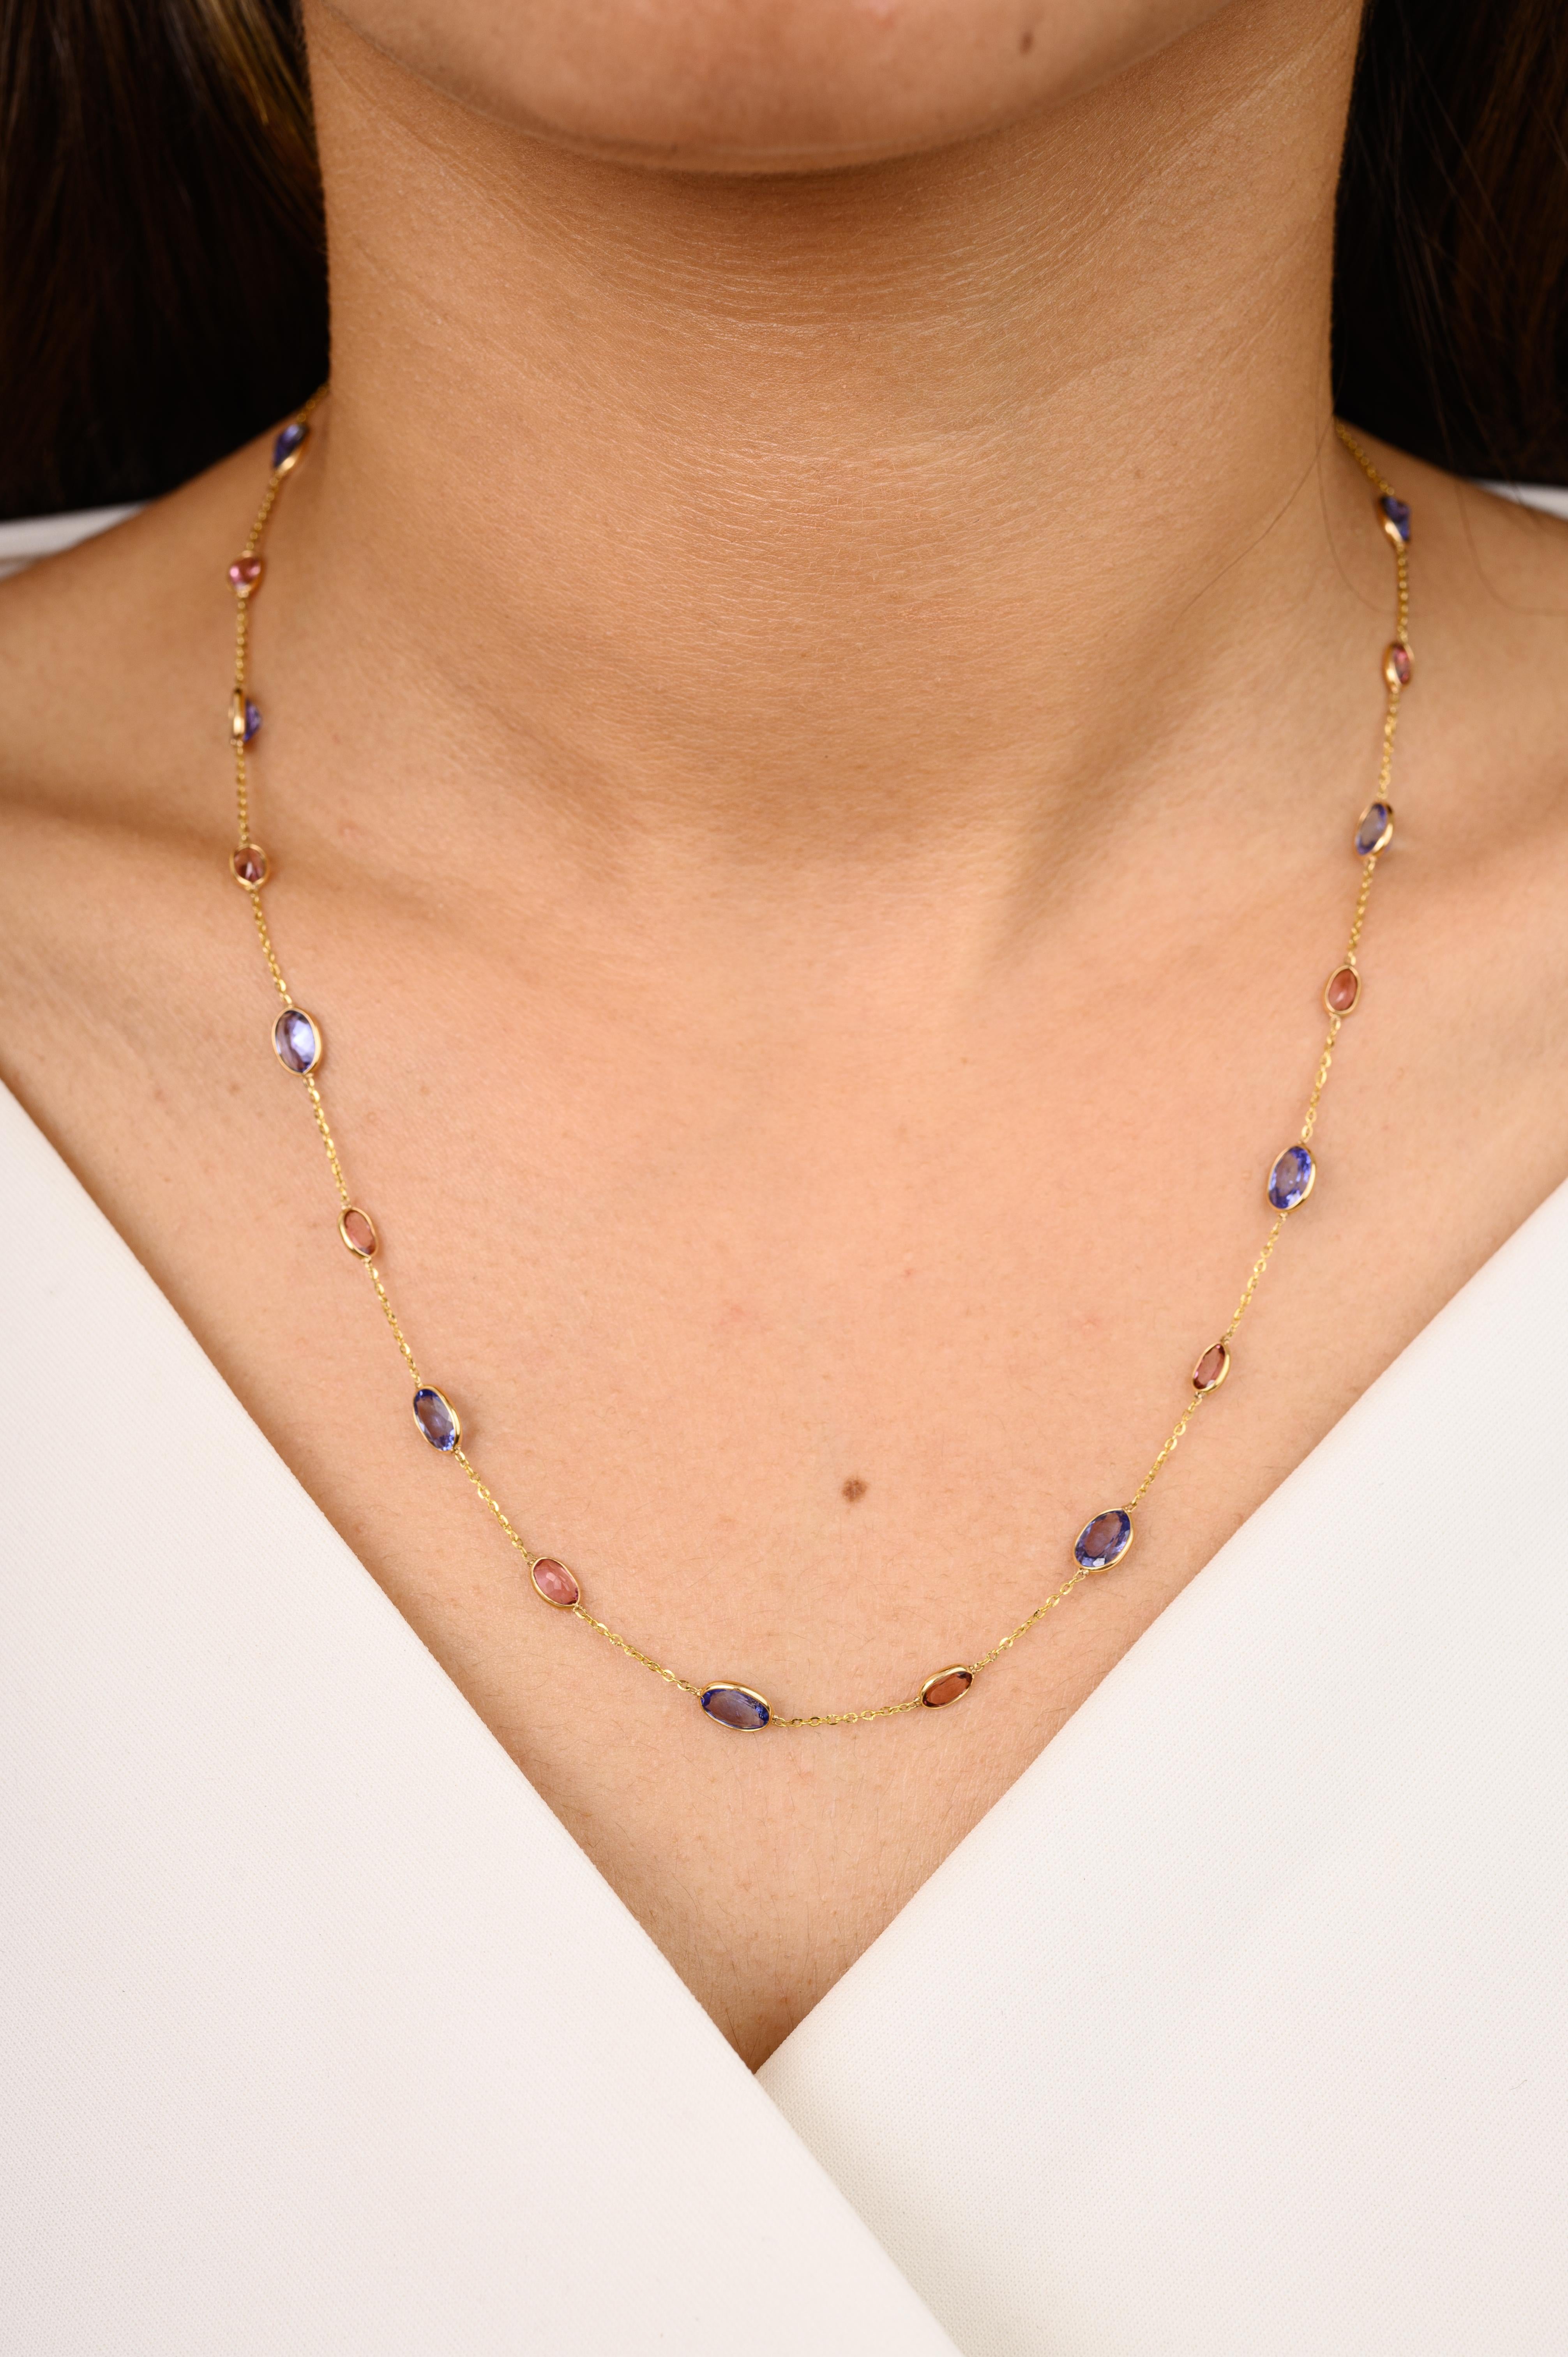 Einzigartige Tansanit- und Turmalin-Halskette aus 18 Karat Gold, besetzt mit Turmalin und Tansanit im Ovalschliff. Dieses atemberaubende Schmuckstück wertet einen Freizeitlook oder ein elegantes Outfit sofort auf. 
Der Tansanit bringt Energie,